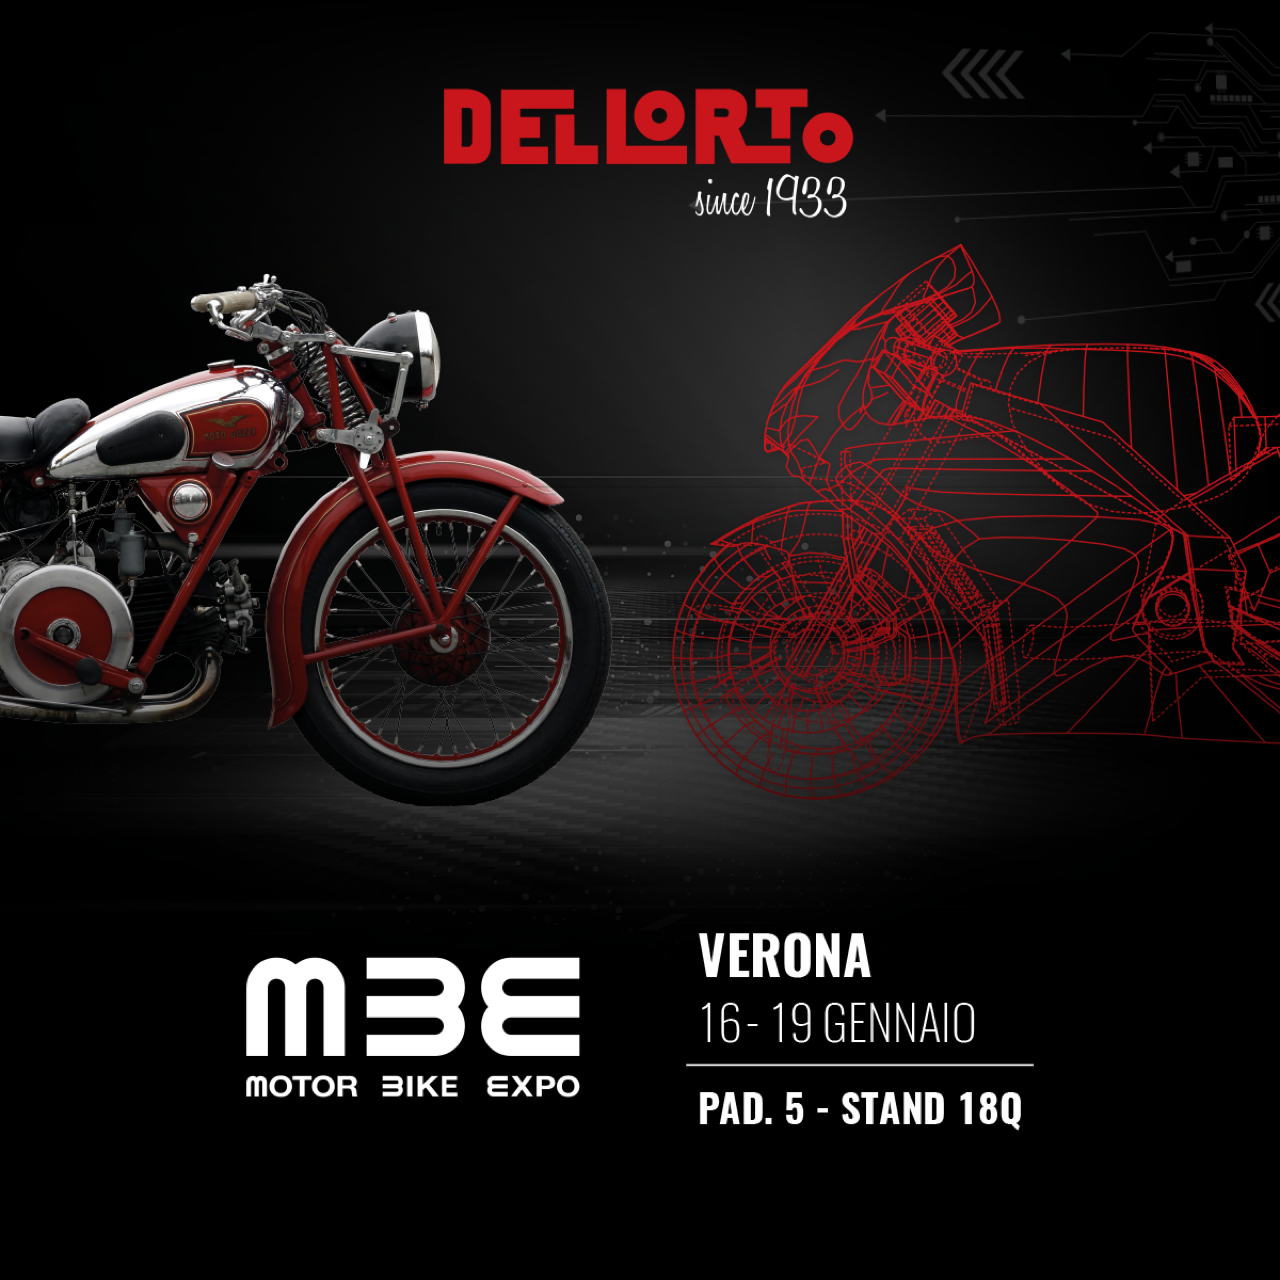 DELLORTO au Motor Bike Expo 2020 - photo